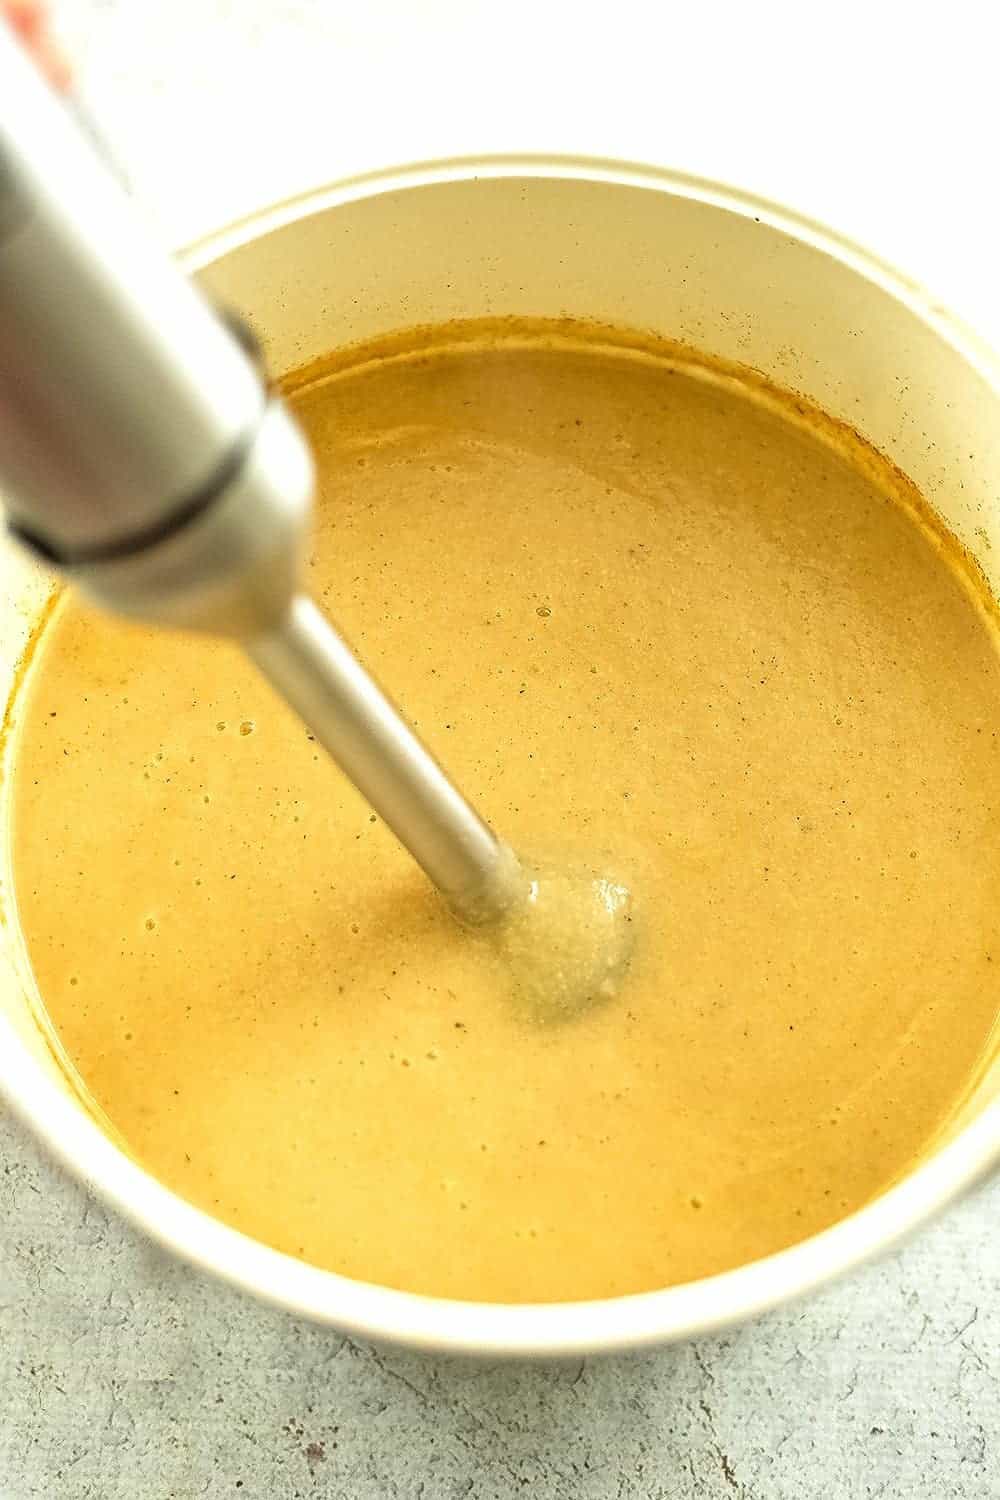 Immersion blender blending up the soup after cooking.